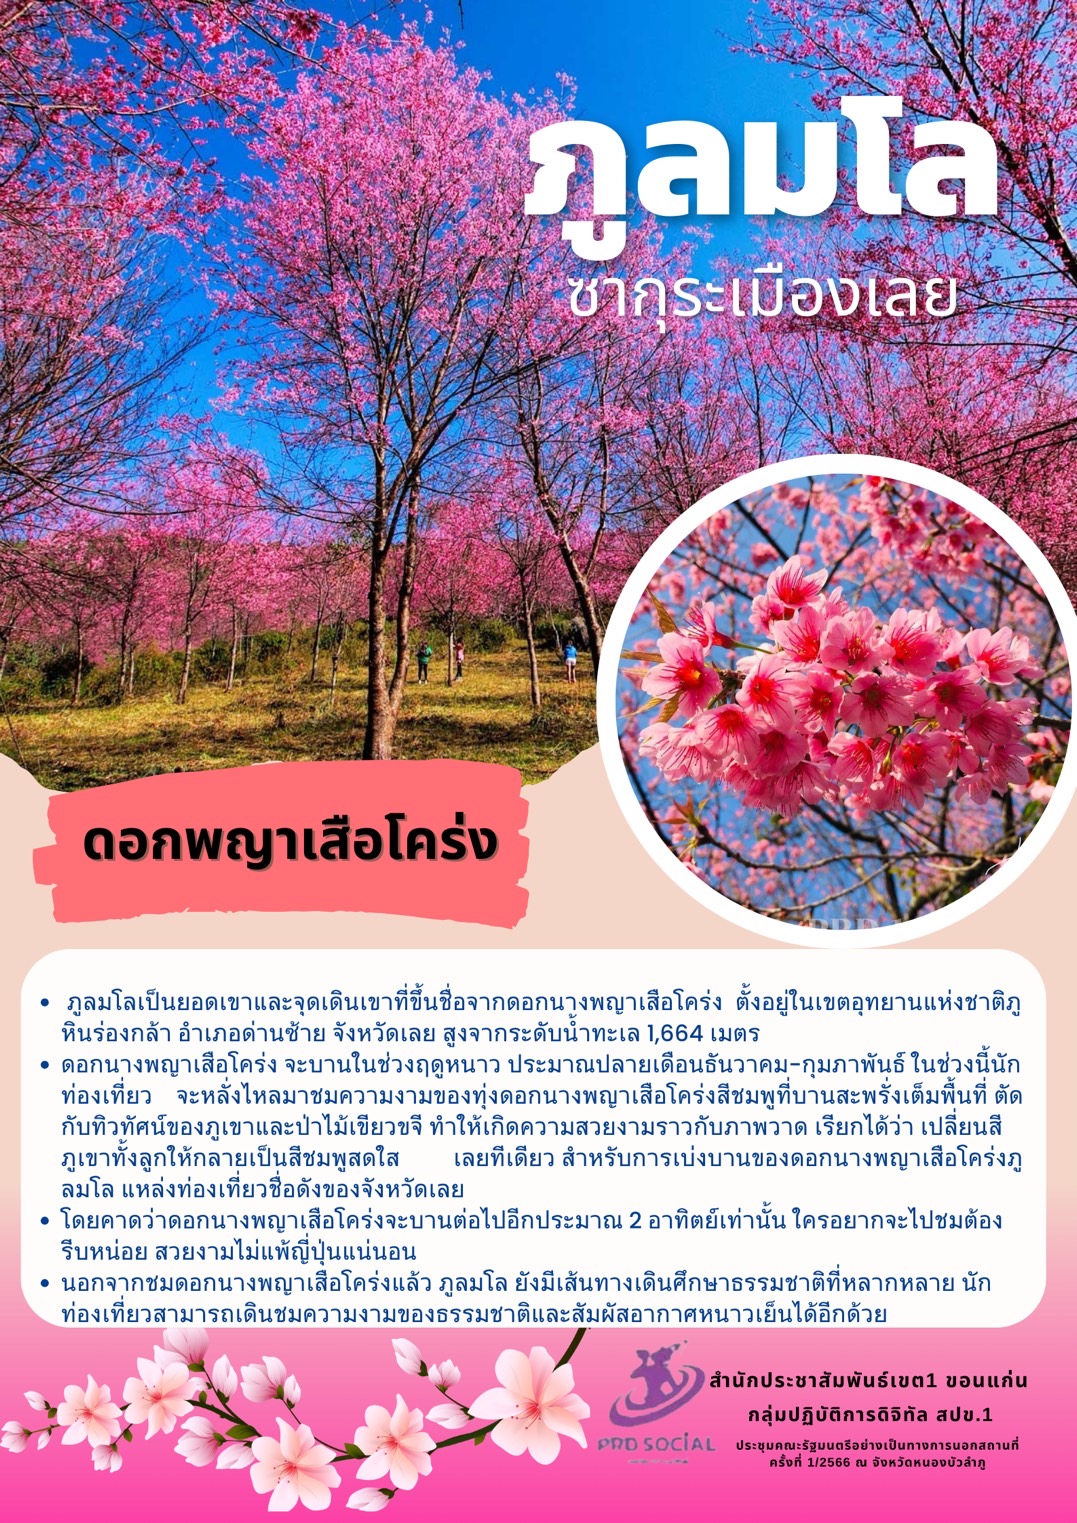 ภูลมโล หรือซากุระเมืองไทย ตั้งอยู่ในเขตอุทยานแห่งชาติภูหินร่องกล้า เป็นสถานที่ท่องเที่ยวทางธรรมชาติ